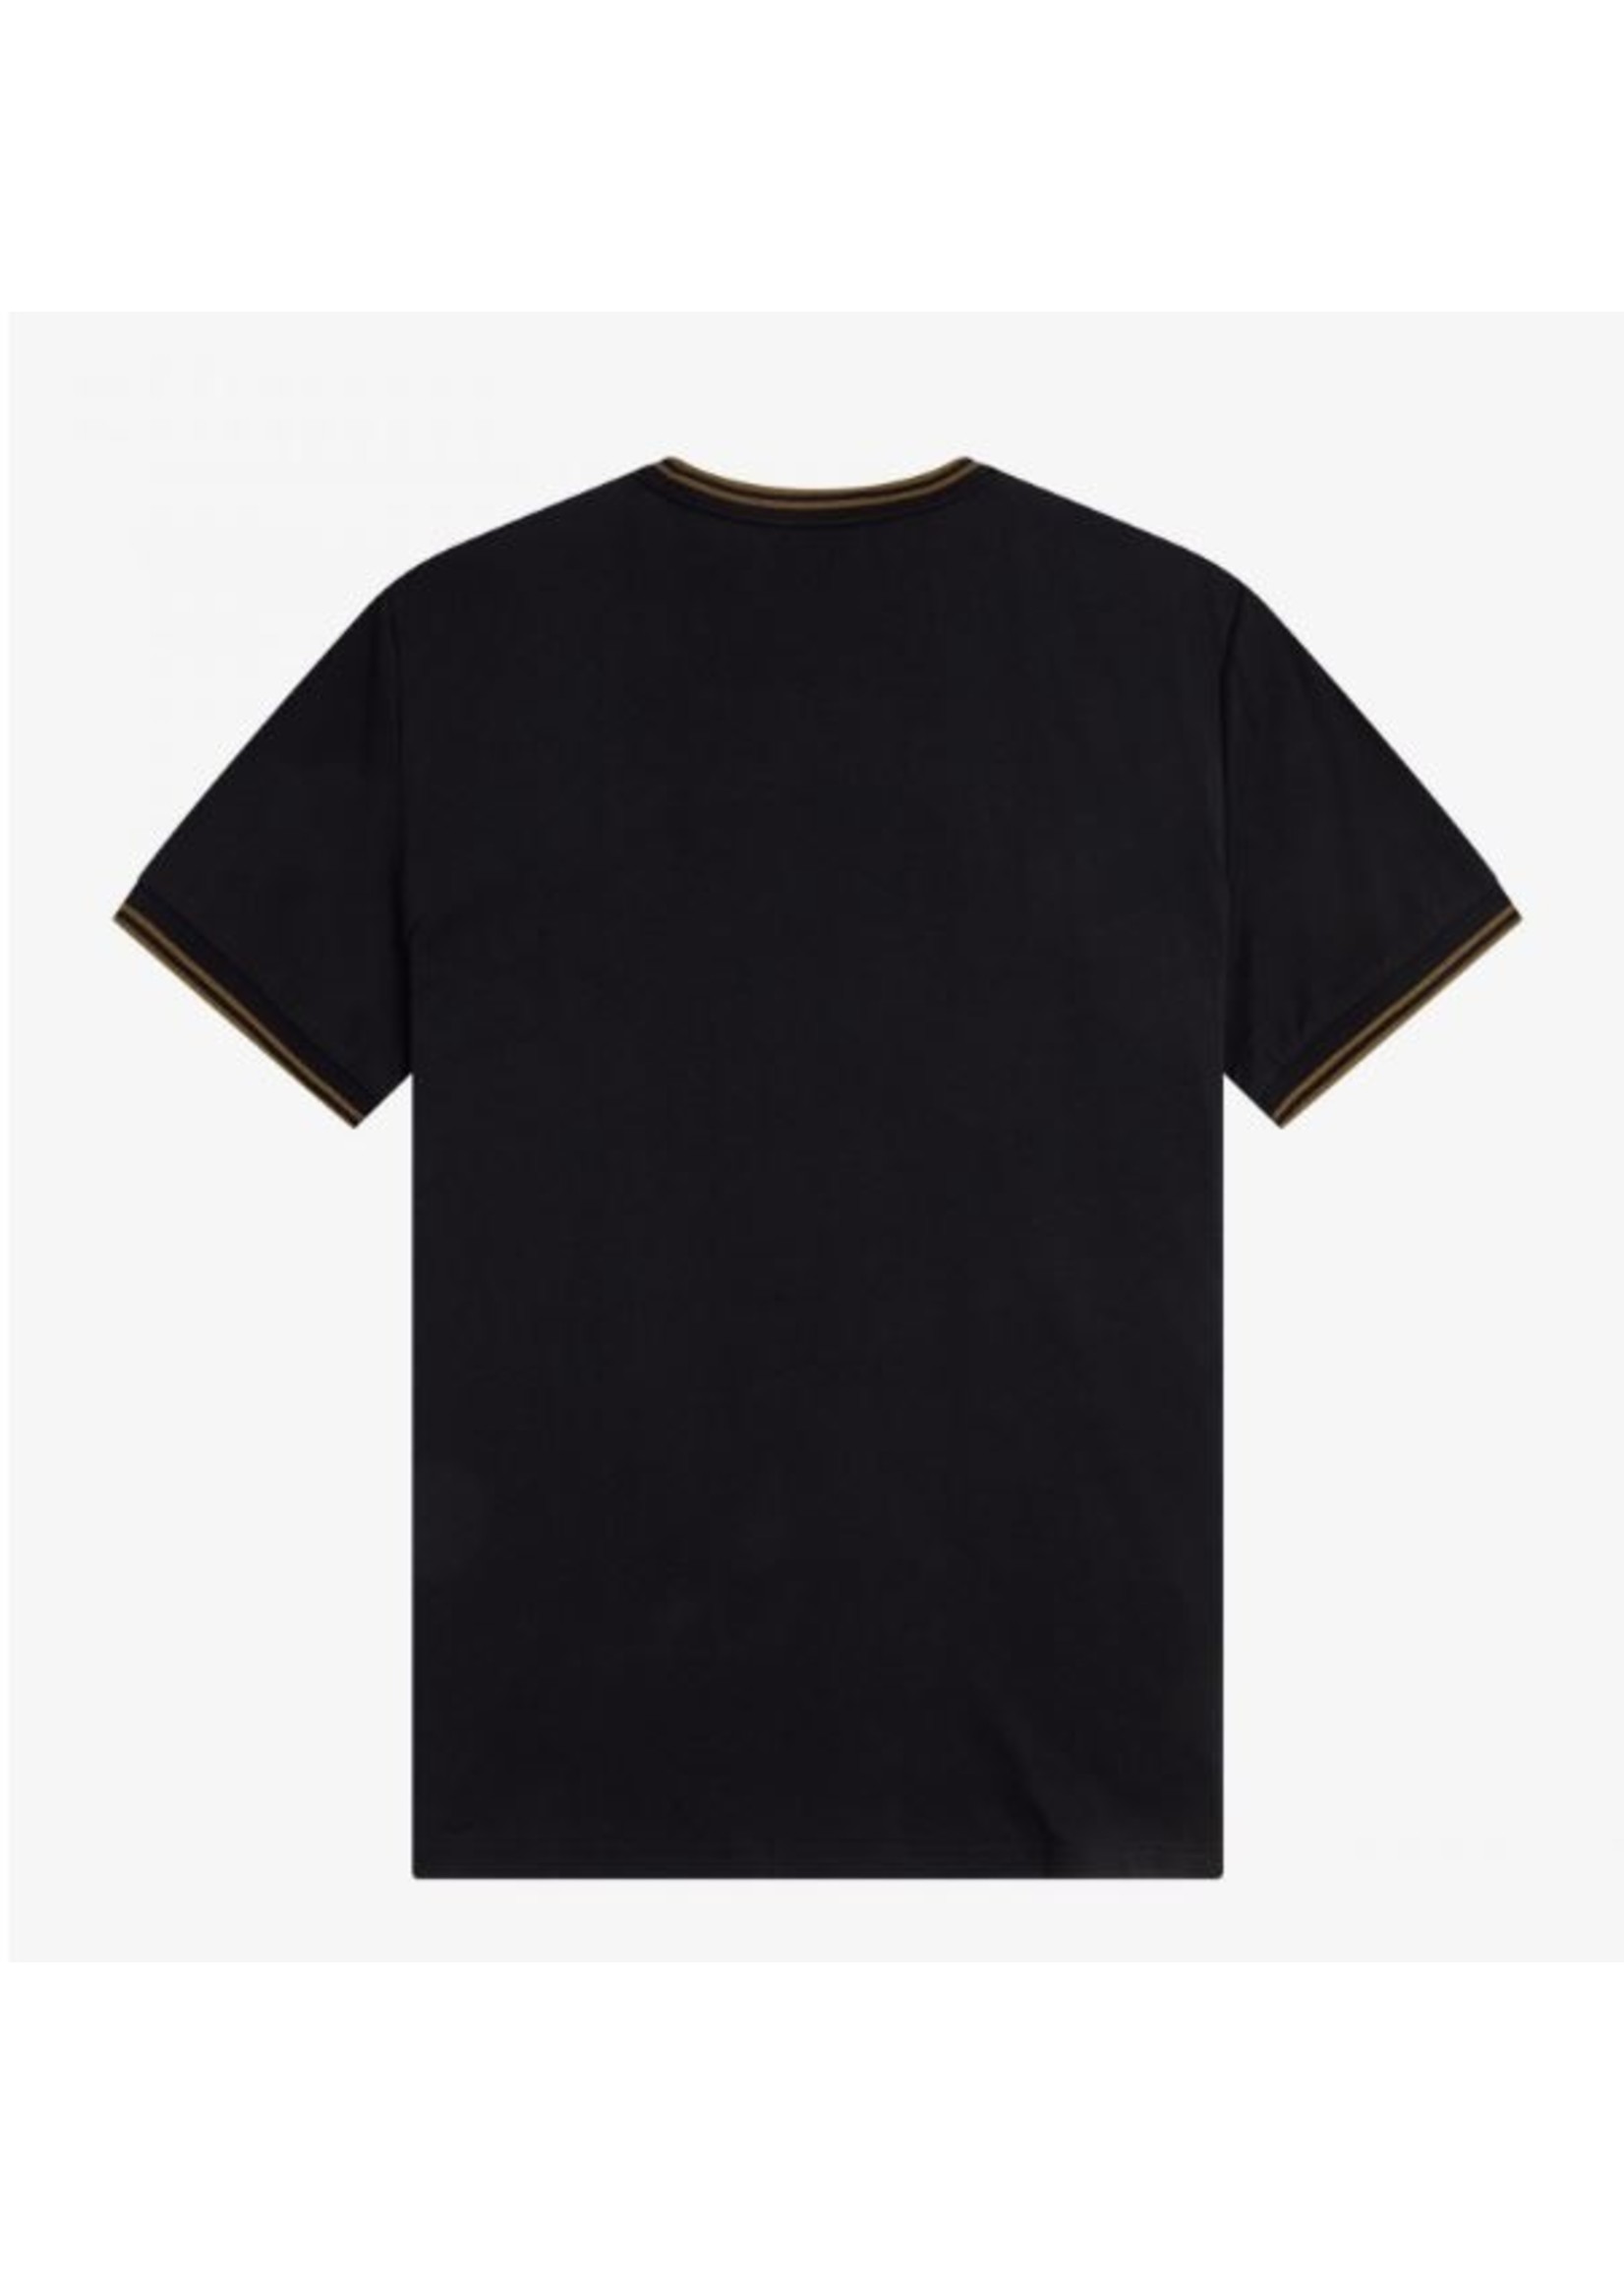 Fred Perry T-shirt M1588 Q27 Black/Shadedston